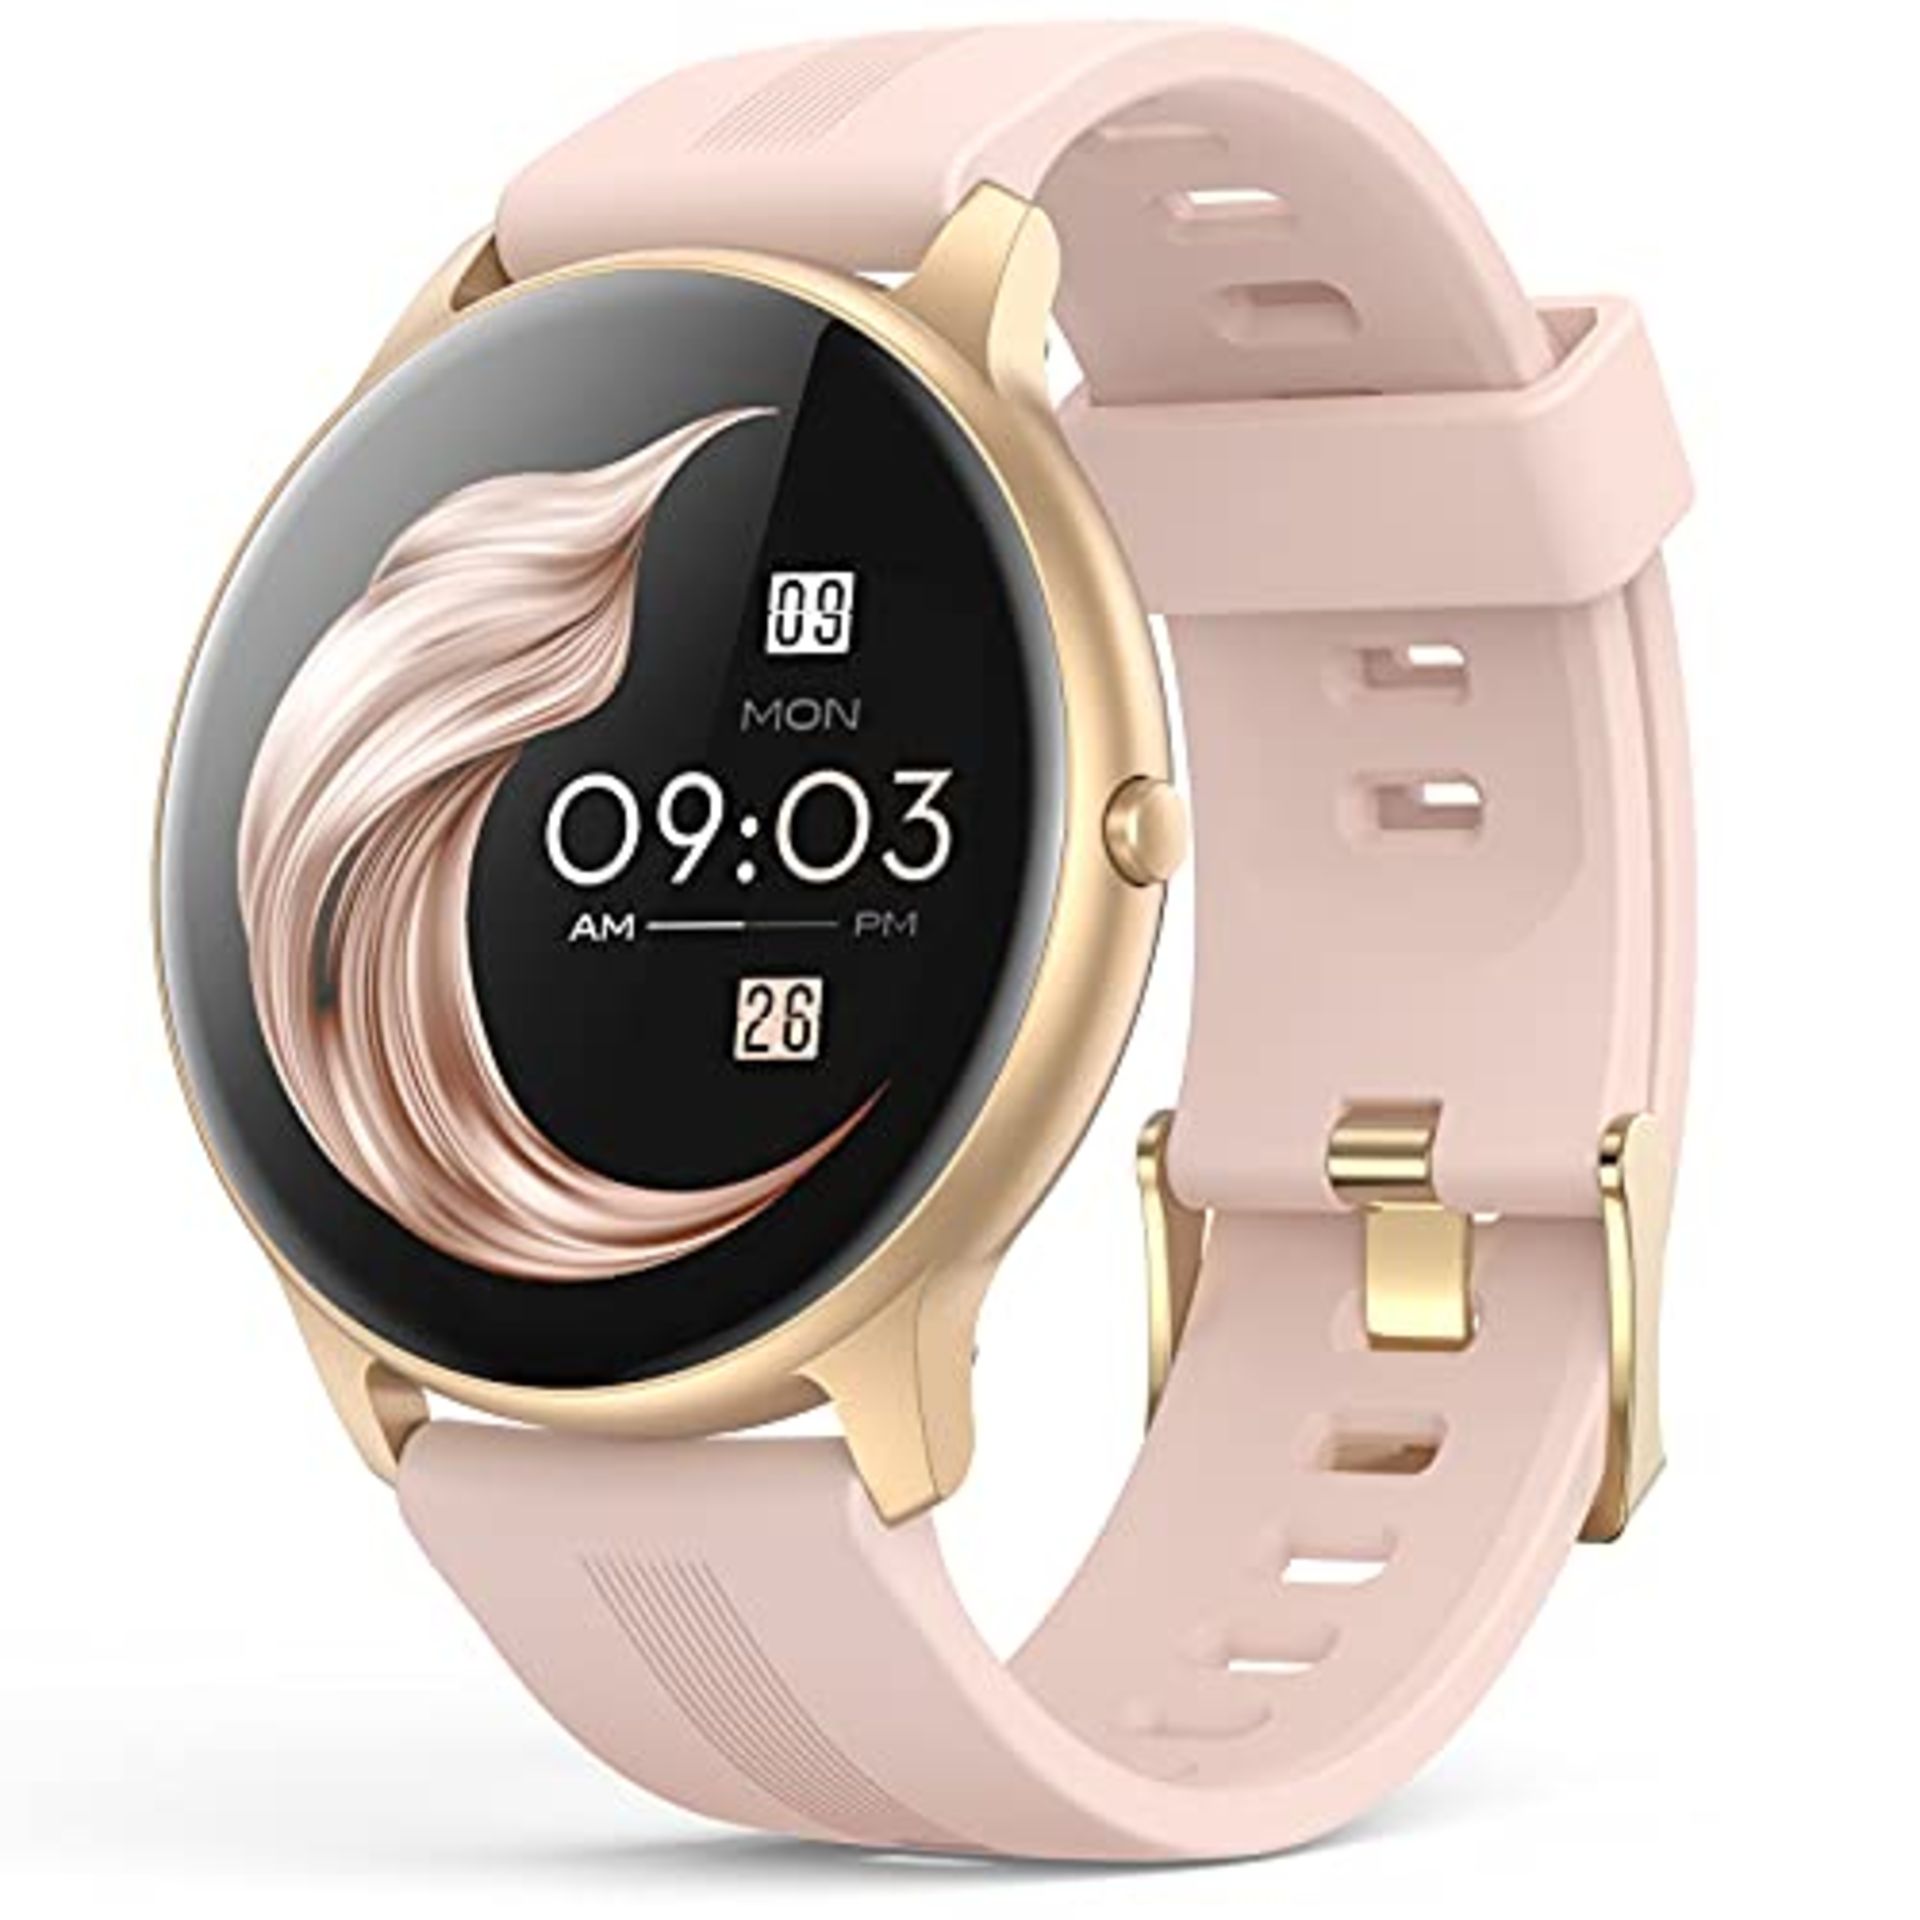 RRP £33.71 AGPTEK Smart Watch for Women - Image 2 of 3